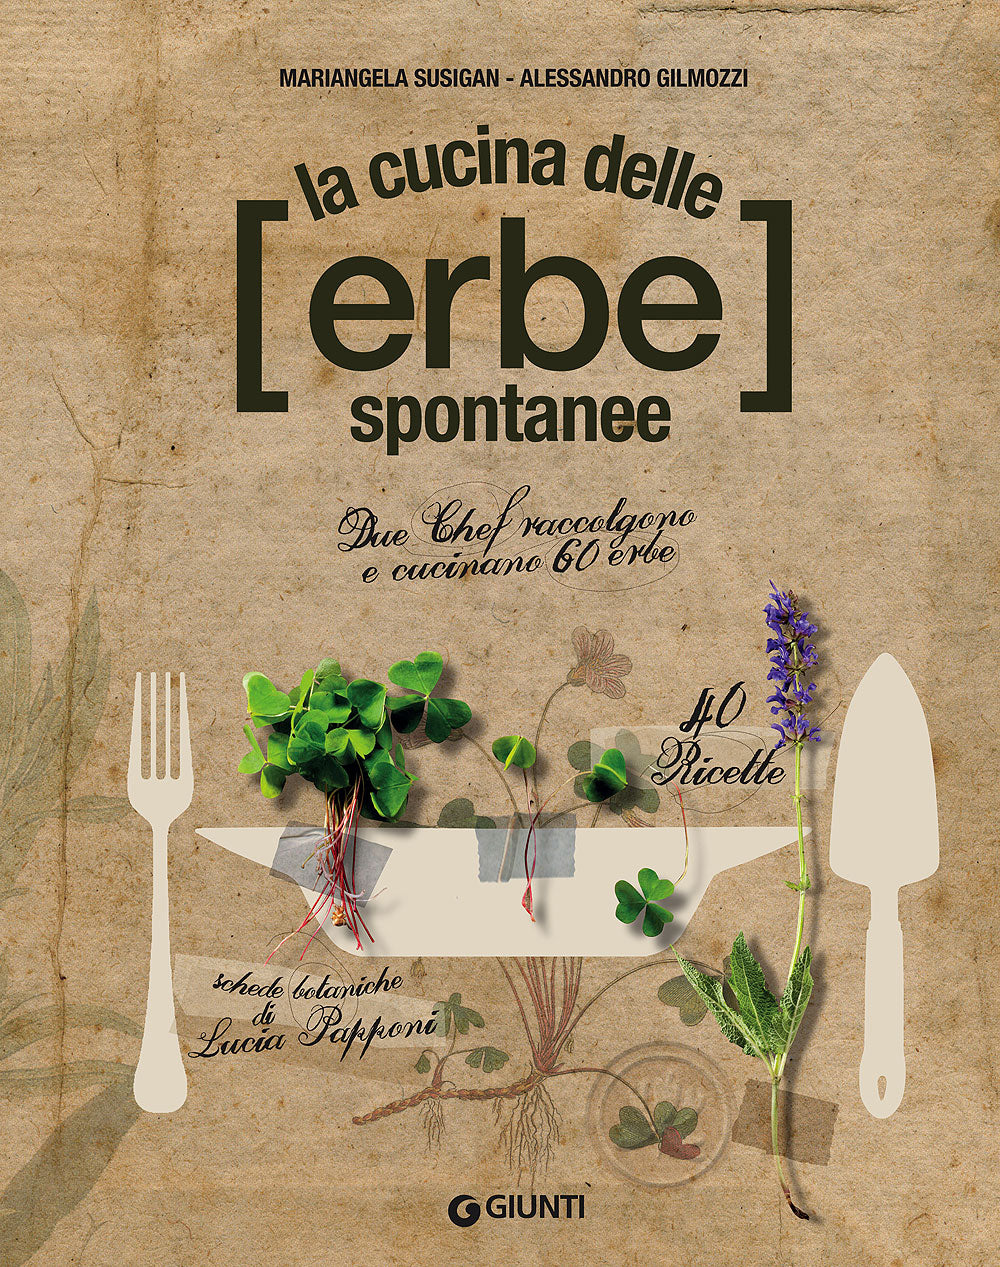 La cucina delle erbe spontanee::Due Chef raccolgono e cucinano 60 erbe - 40 ricette - Schede botaniche di Lucia Papponi